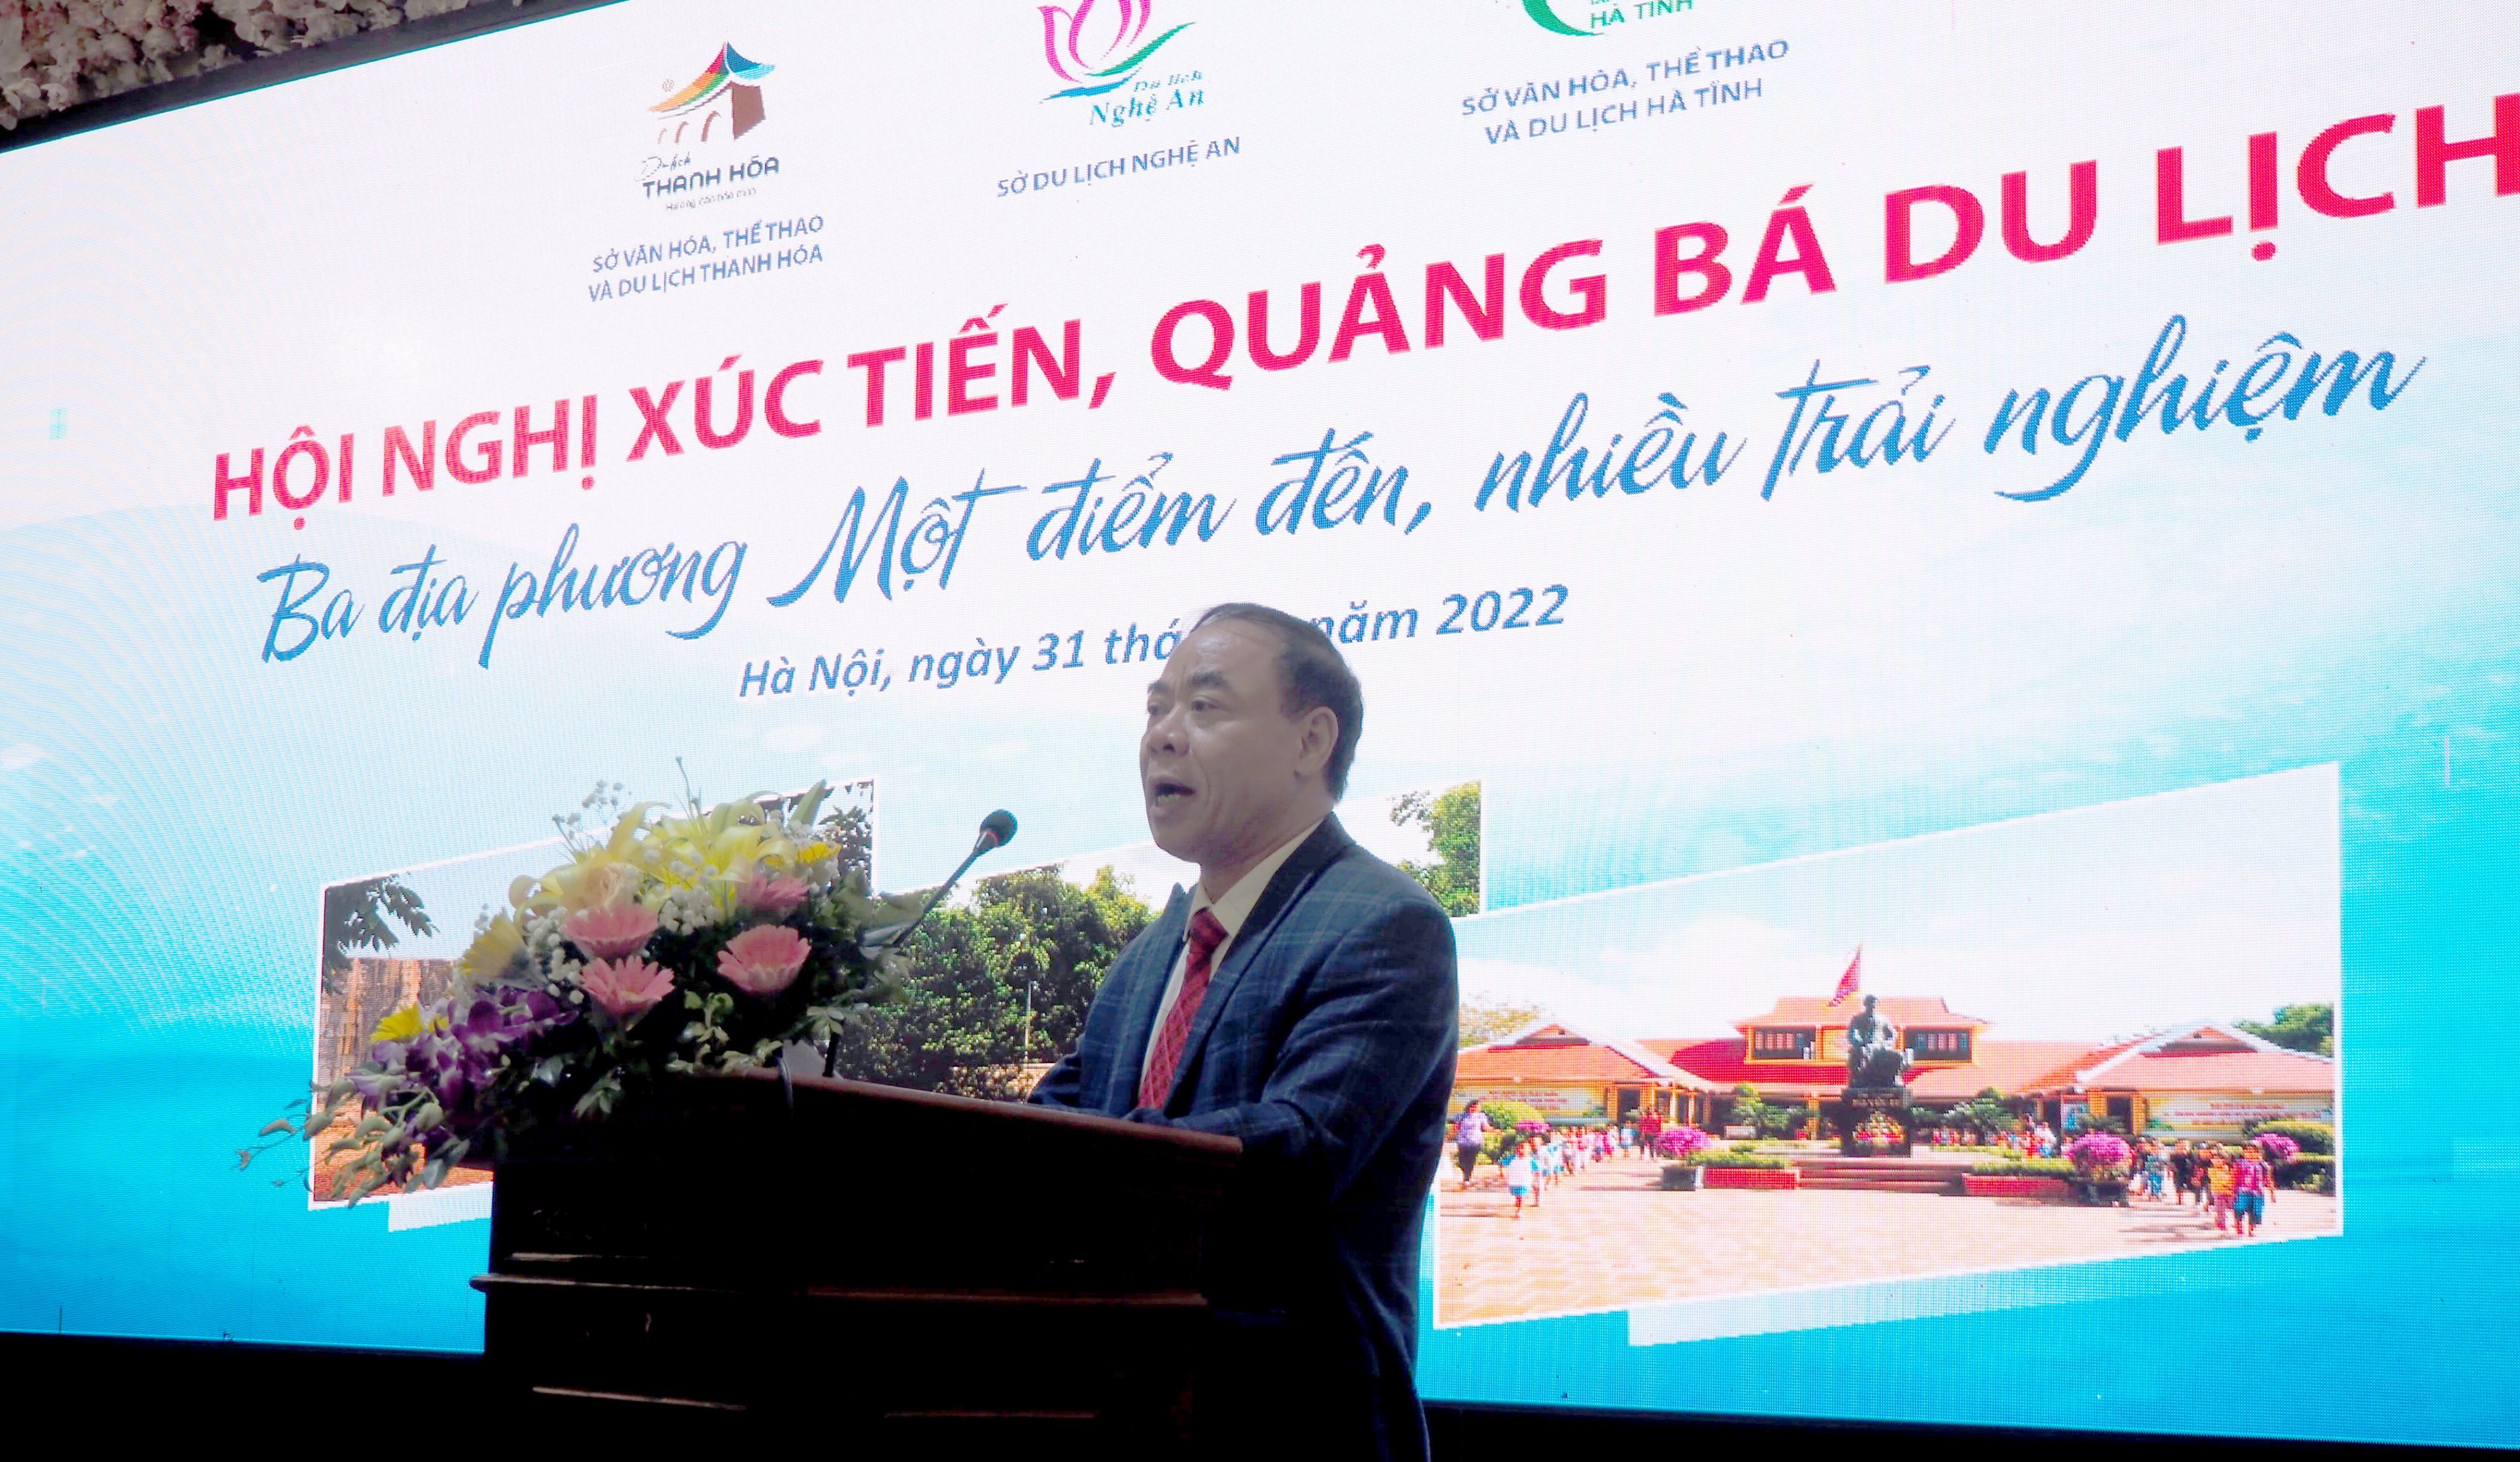 Giám đốc Sở Du lịch Nghệ An Nguyễn Mạnh Cường phát biểu tại hội nghị